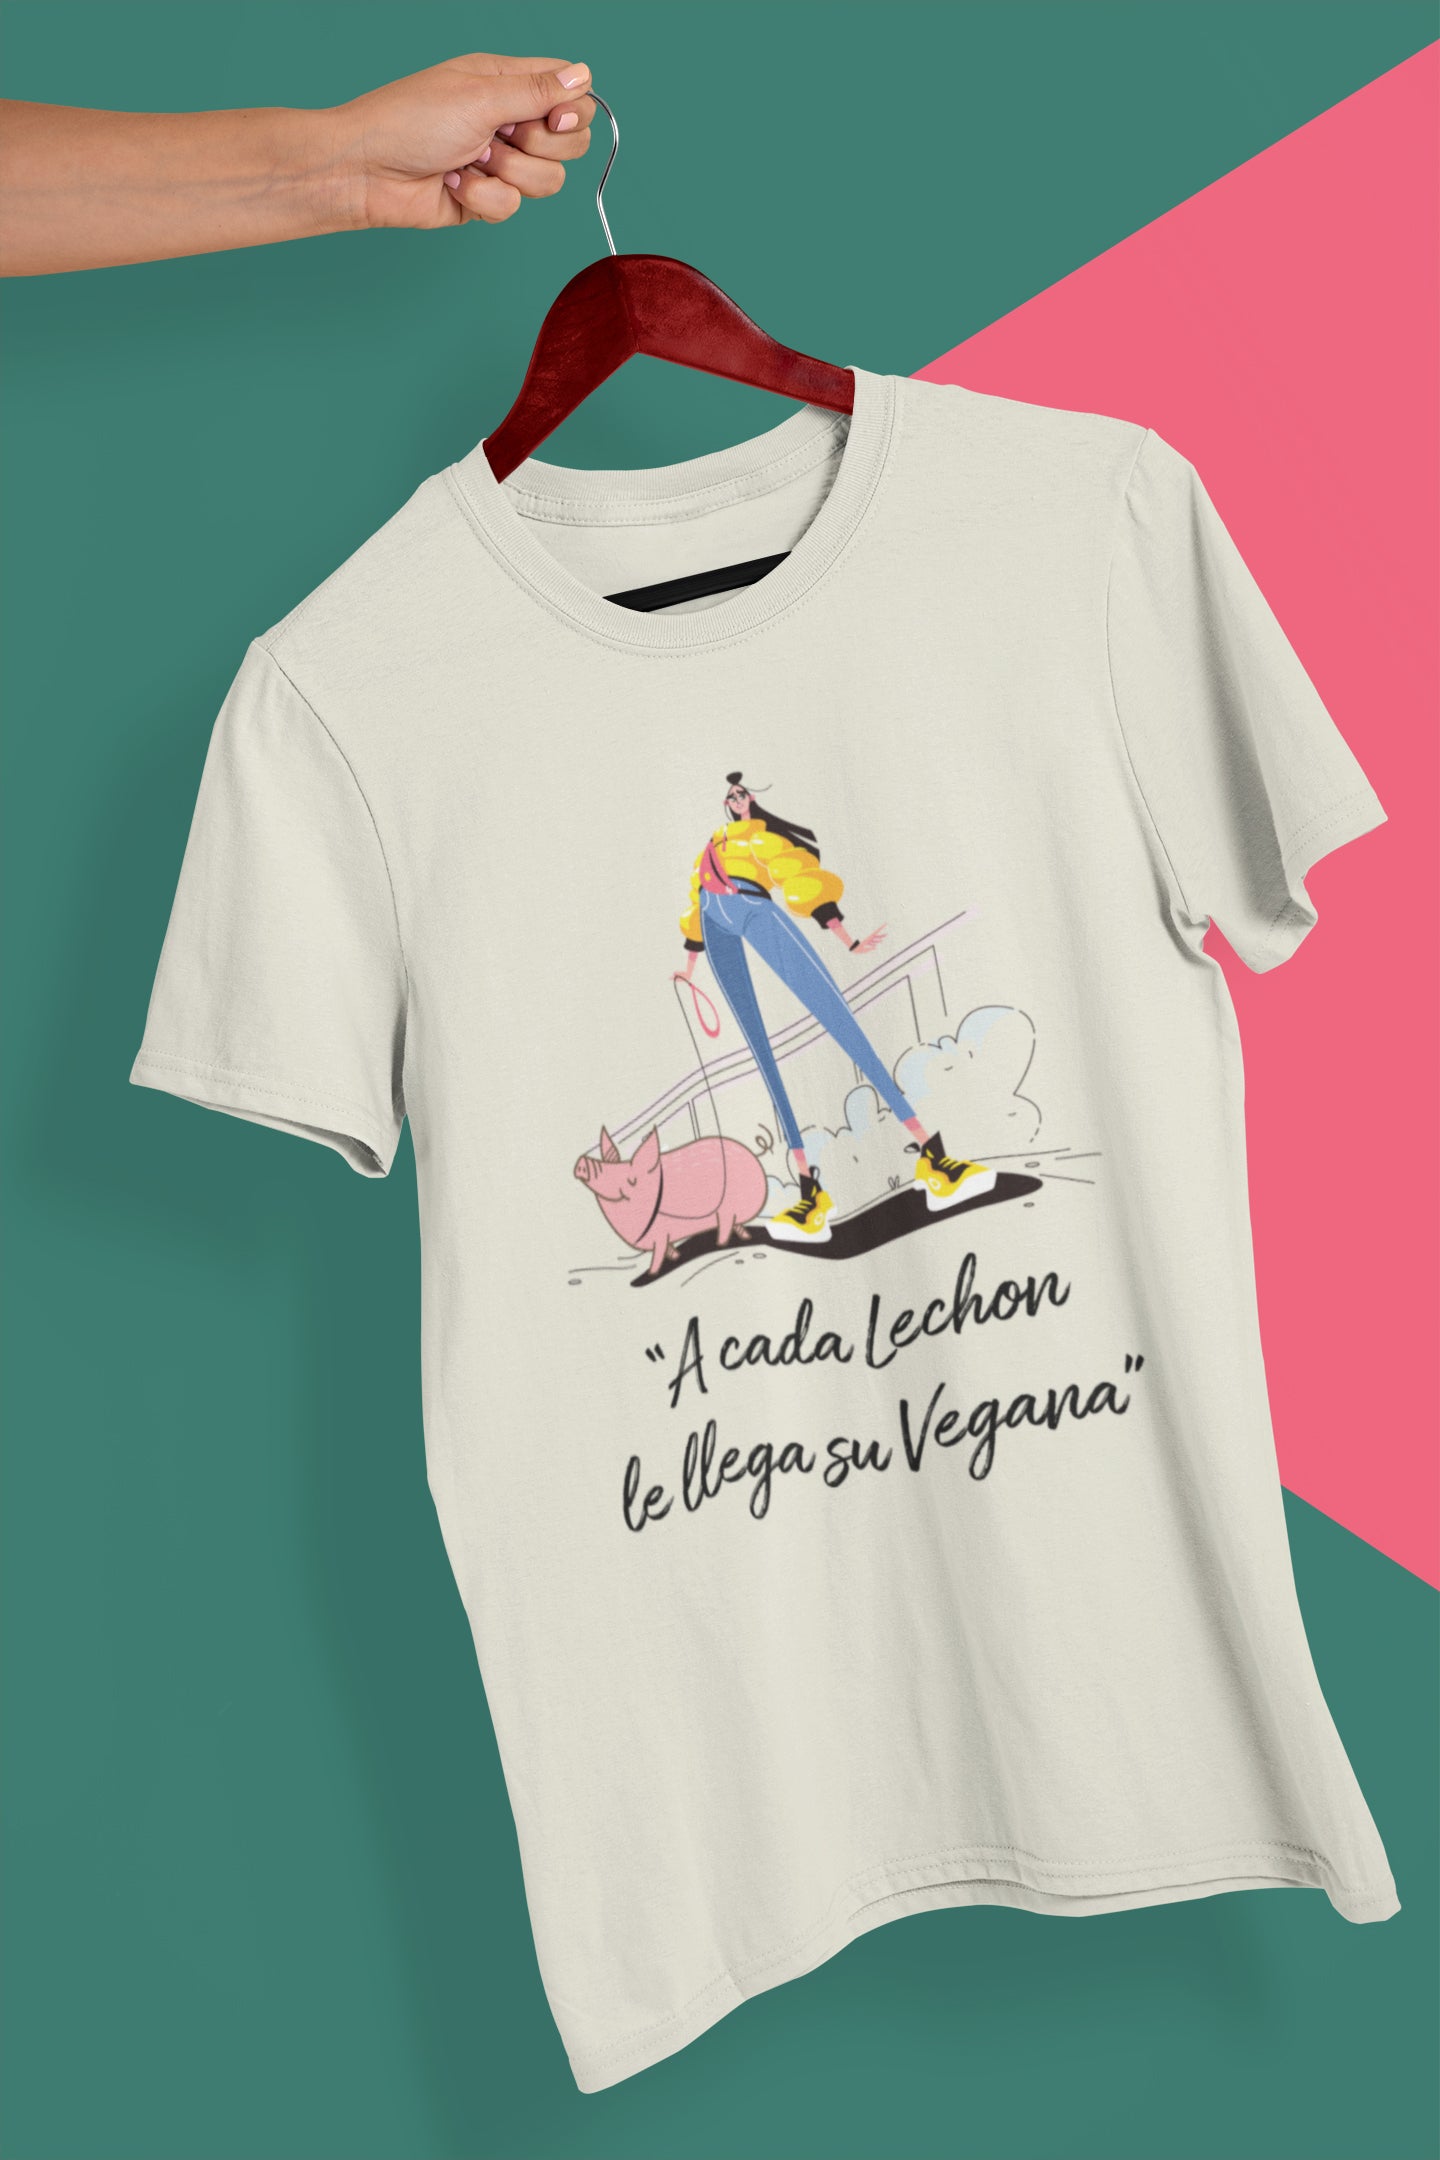 "A cada lechon le llega su vegana" T-Shirt